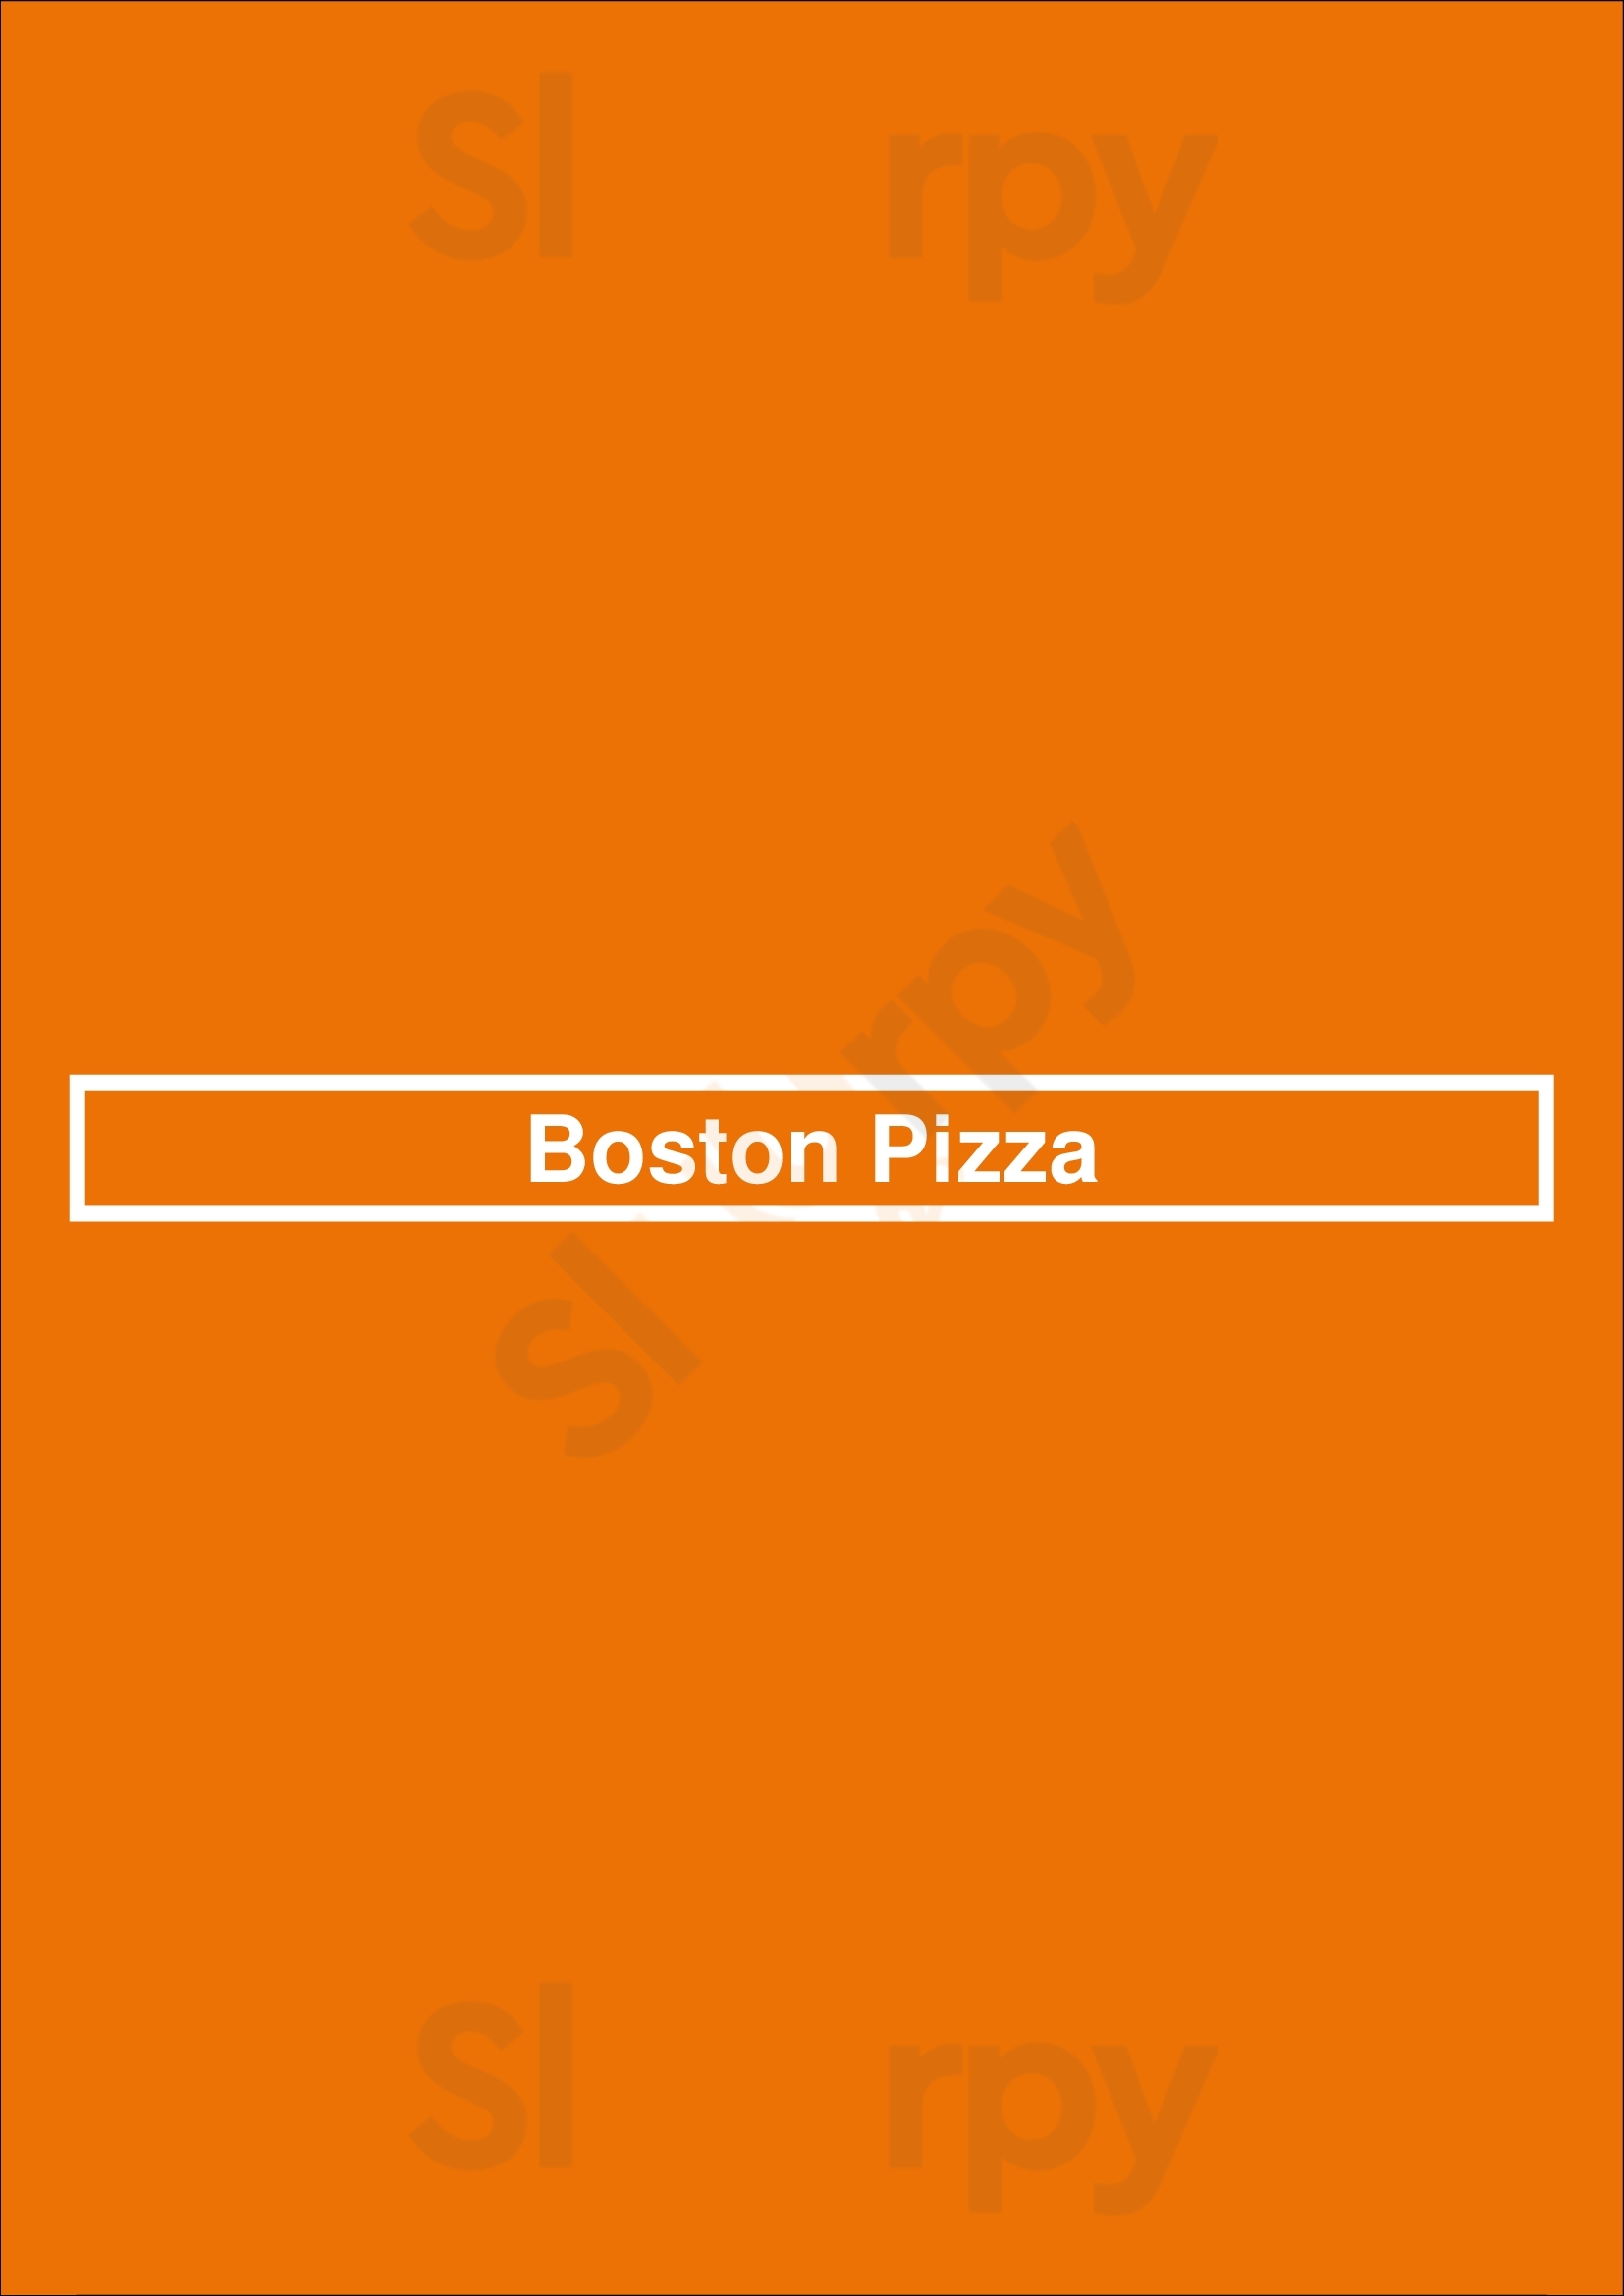 Boston Pizza Edmonton Menu - 1